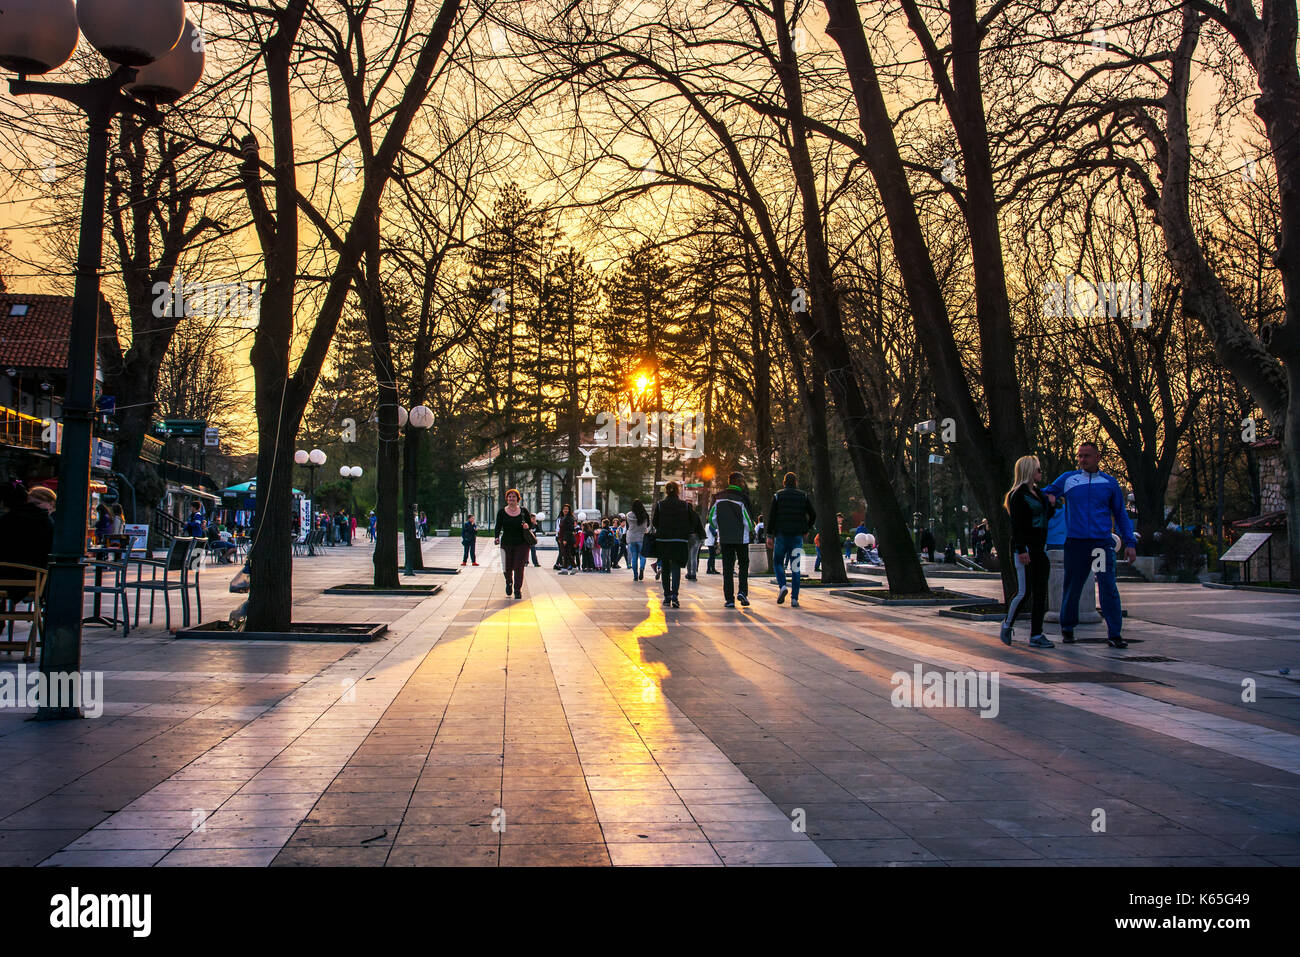 SOKOBANJA, Serbien - 25. März 2017: Sokobanja, Serbien spa Stadt mit Touristen und Einheimischen in der Fußgängerzone bei Sonnenuntergang Stockfoto